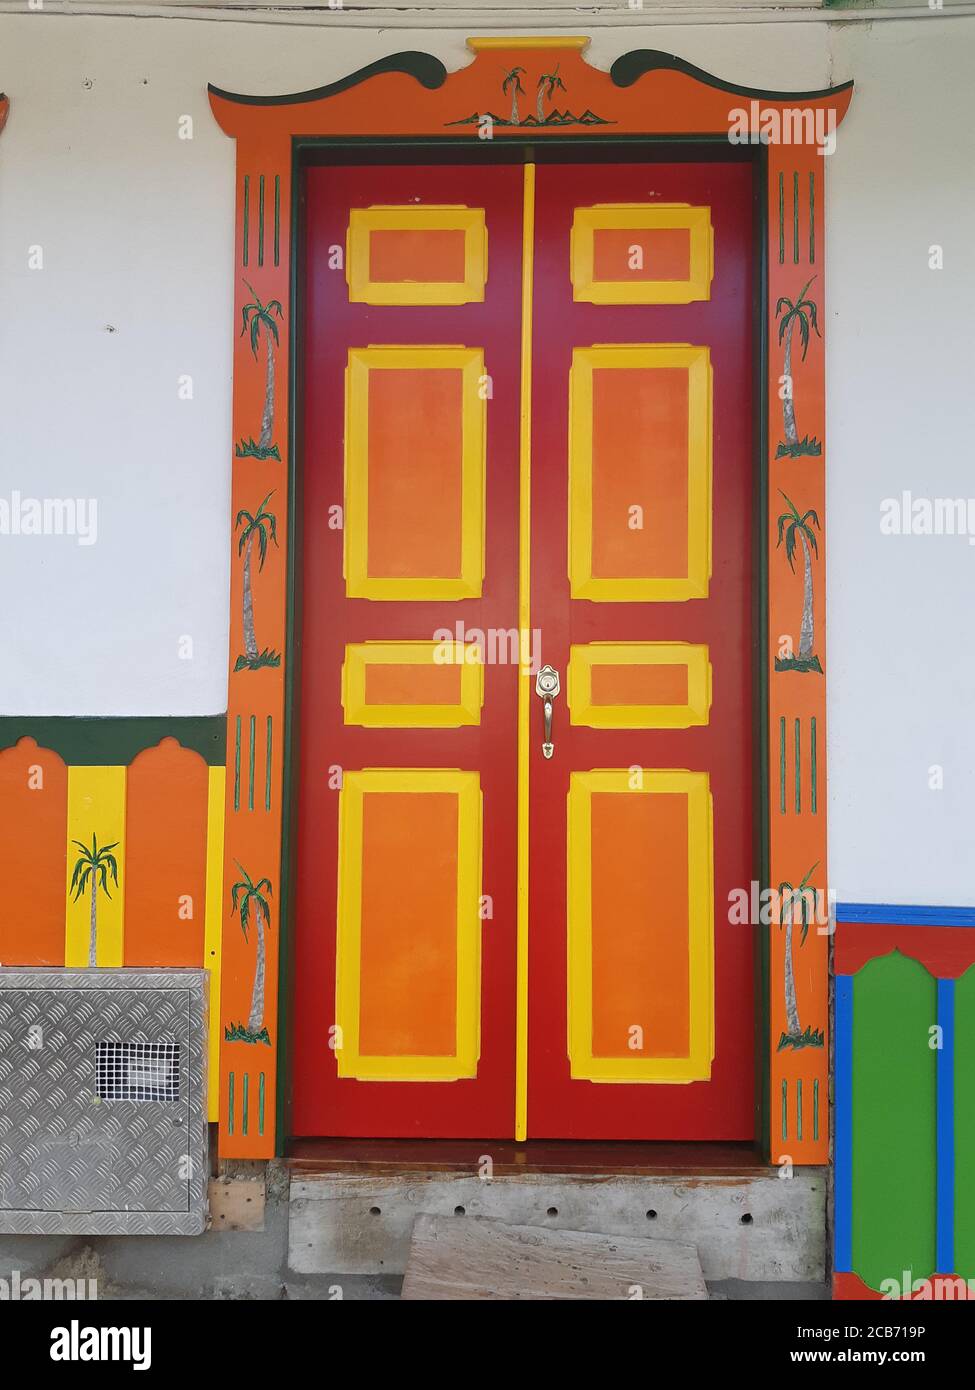 Puertas coloniales salento fotografías e imágenes de alta resolución - Alamy